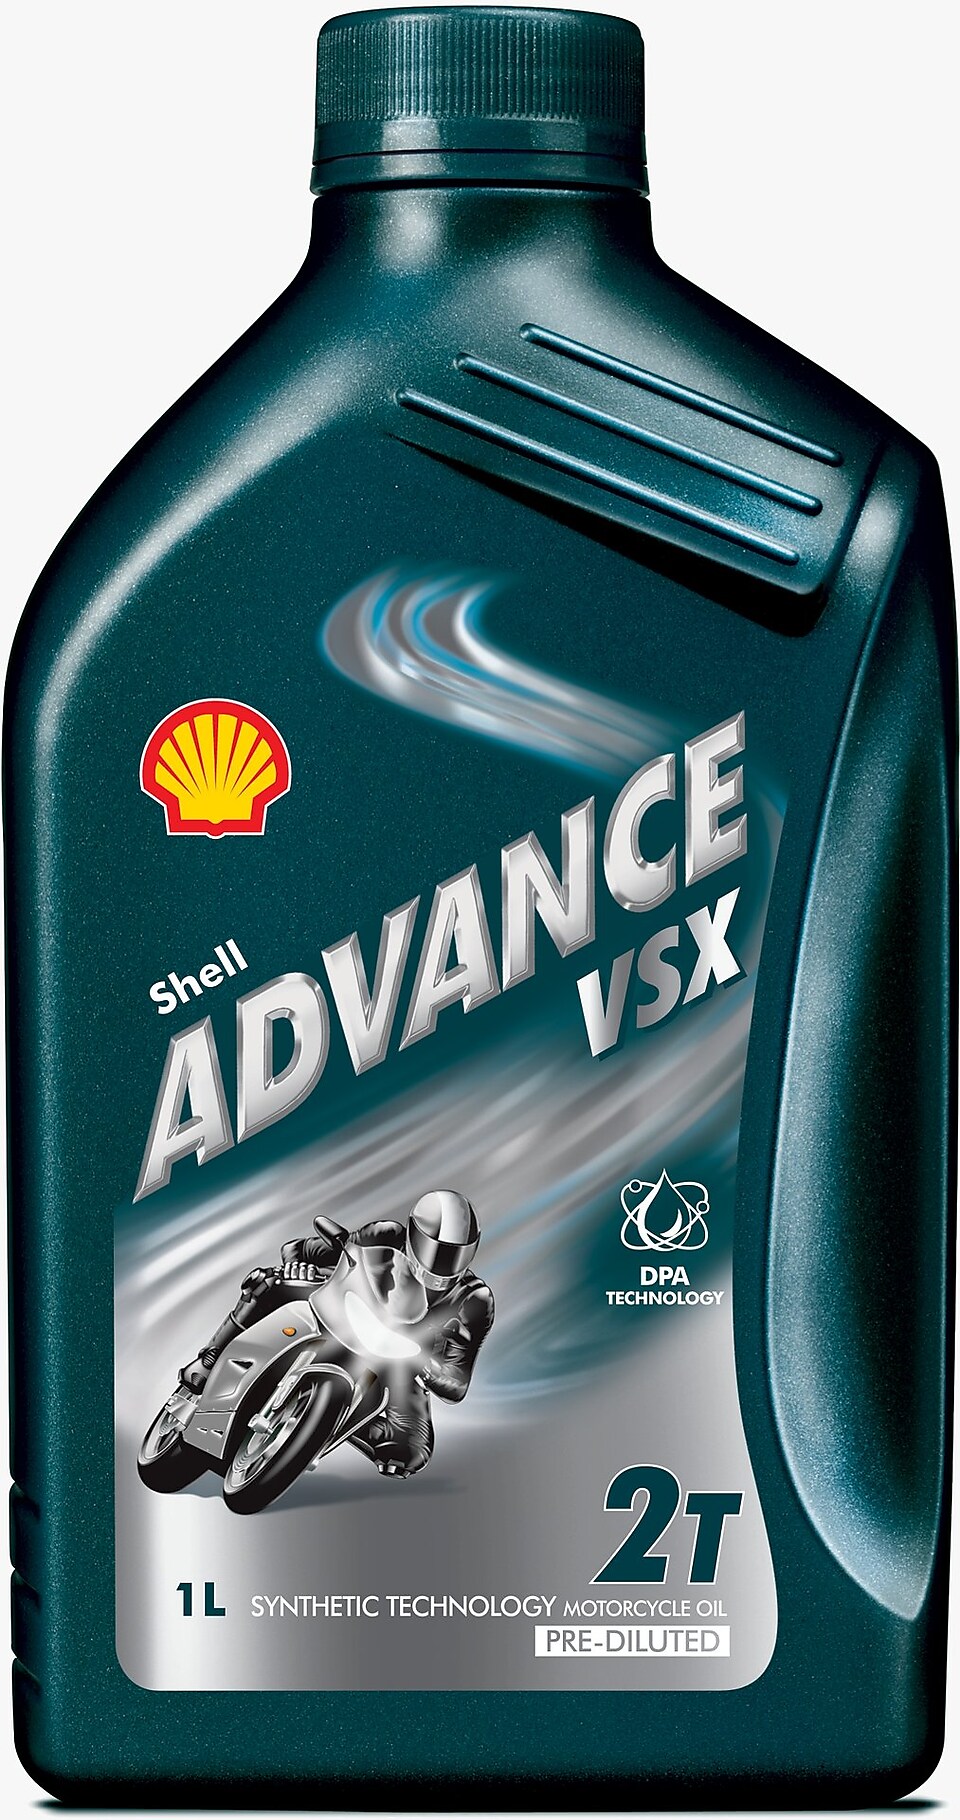 Packshot of Shell Advance VSX 2